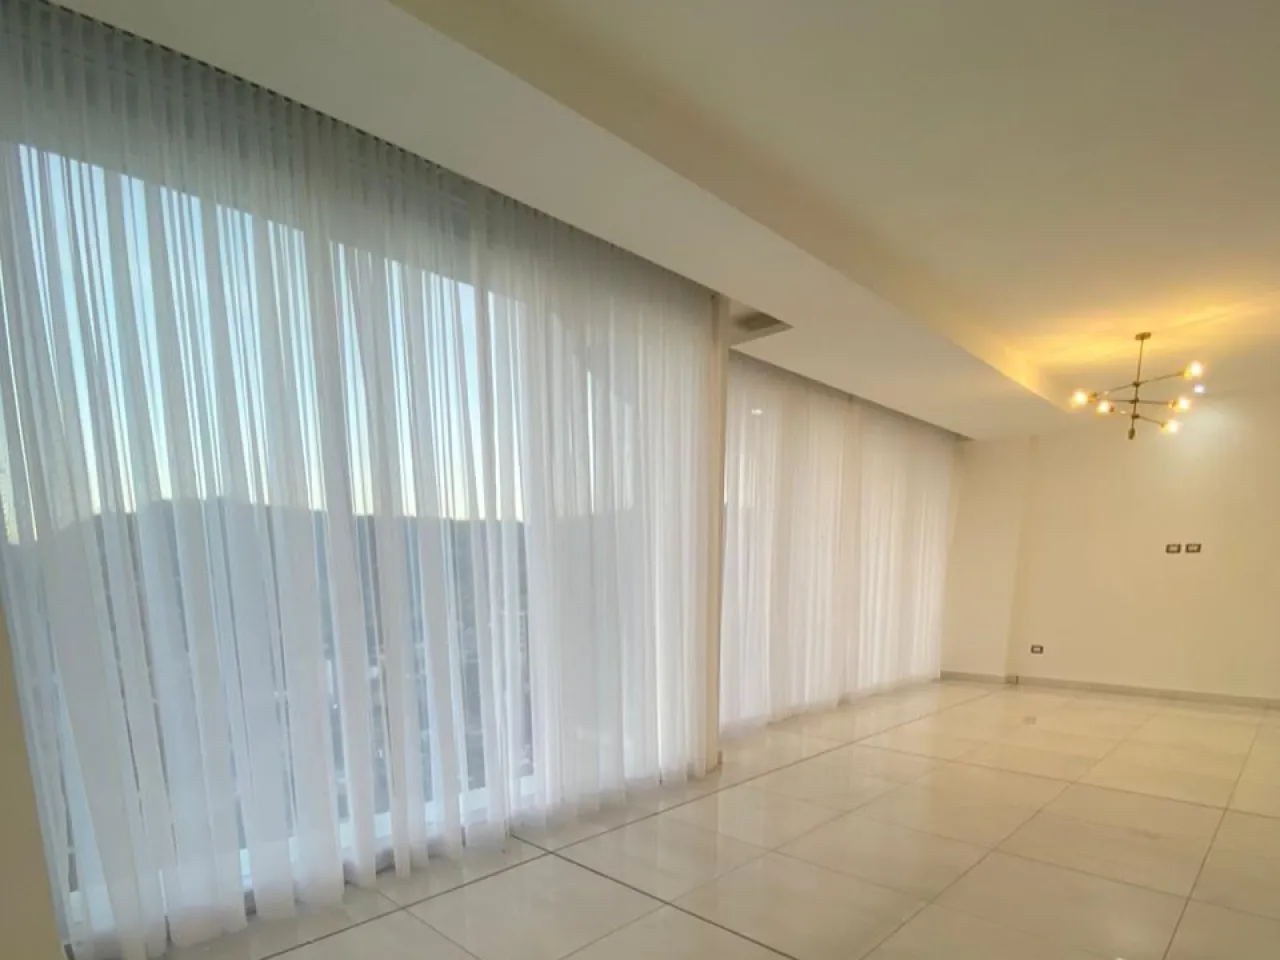 El apartamento cuenta con un área de sala y comedor amplios con cortinas automatizadas que brindan una hermosa vista de la ciudad. Las paredes son de color blanco y el suelo es de porcelanato.